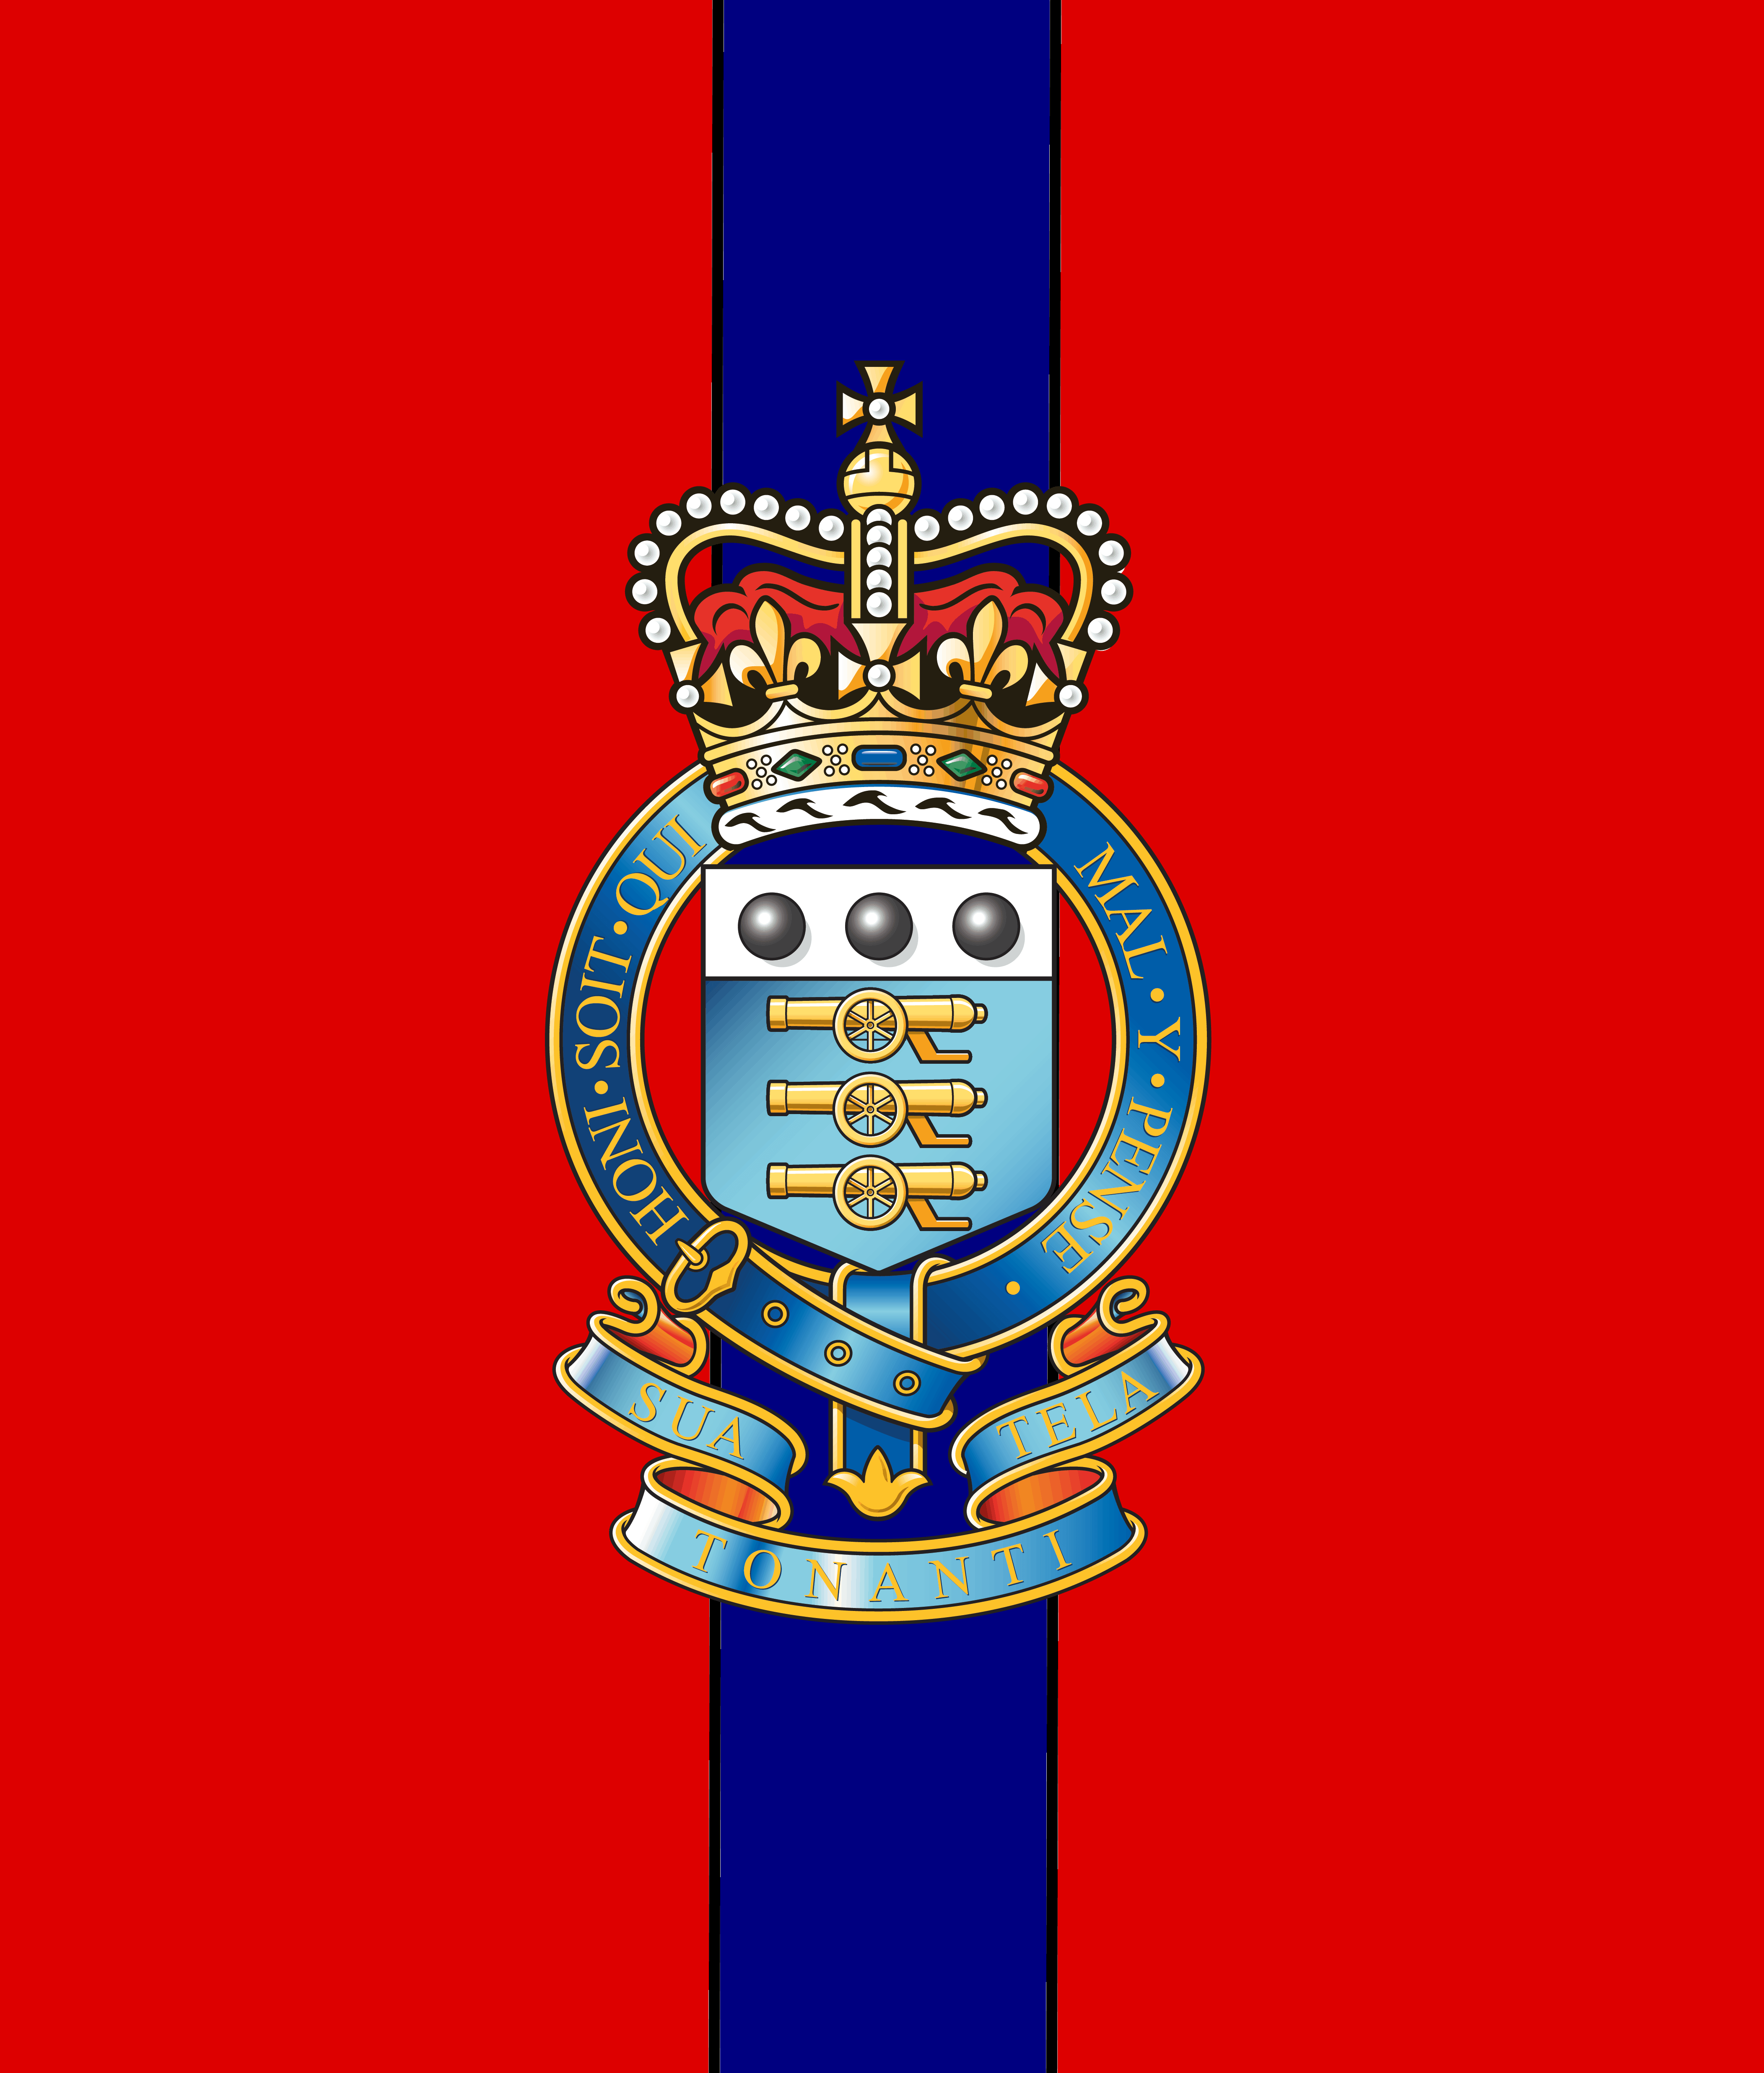 Royal Army Ordnance Corps. Army badge, British army regiments, British army uniform